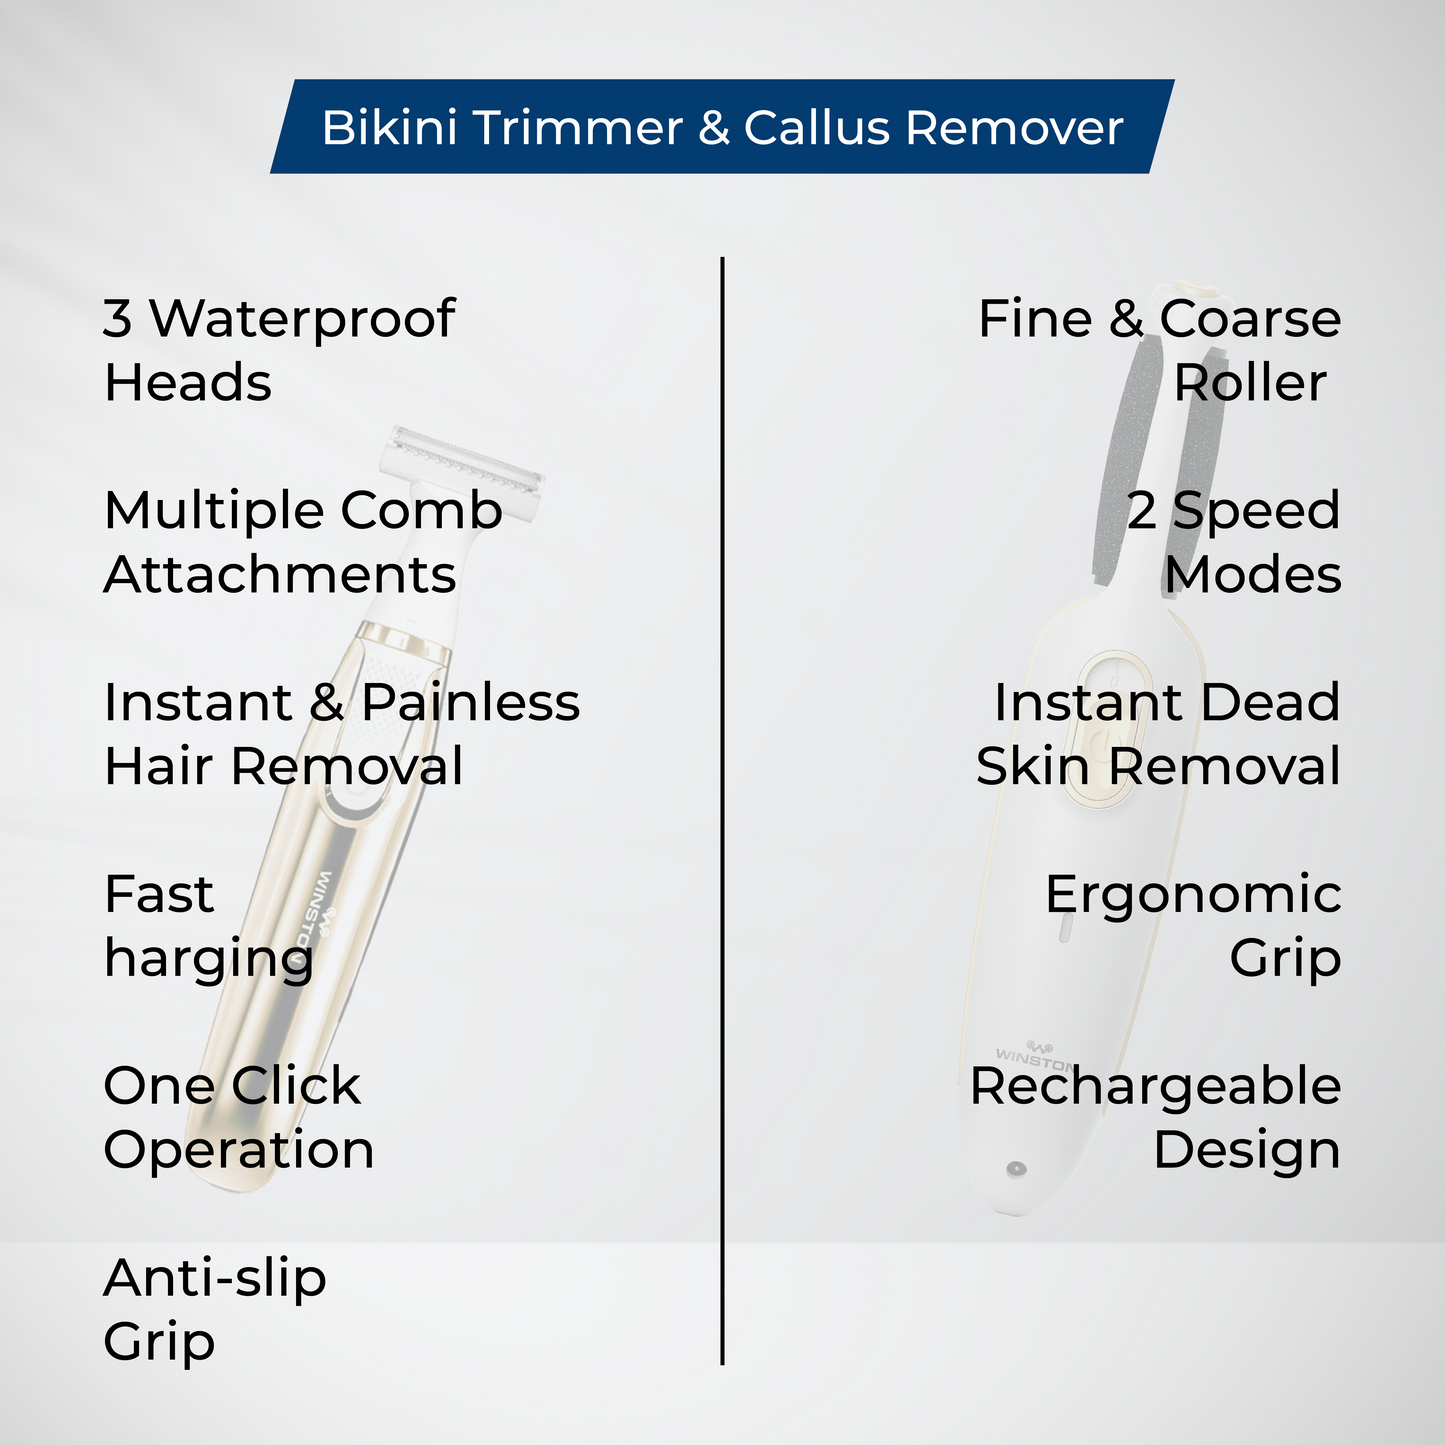 Bikini Trimmer & Callus Remover Combo